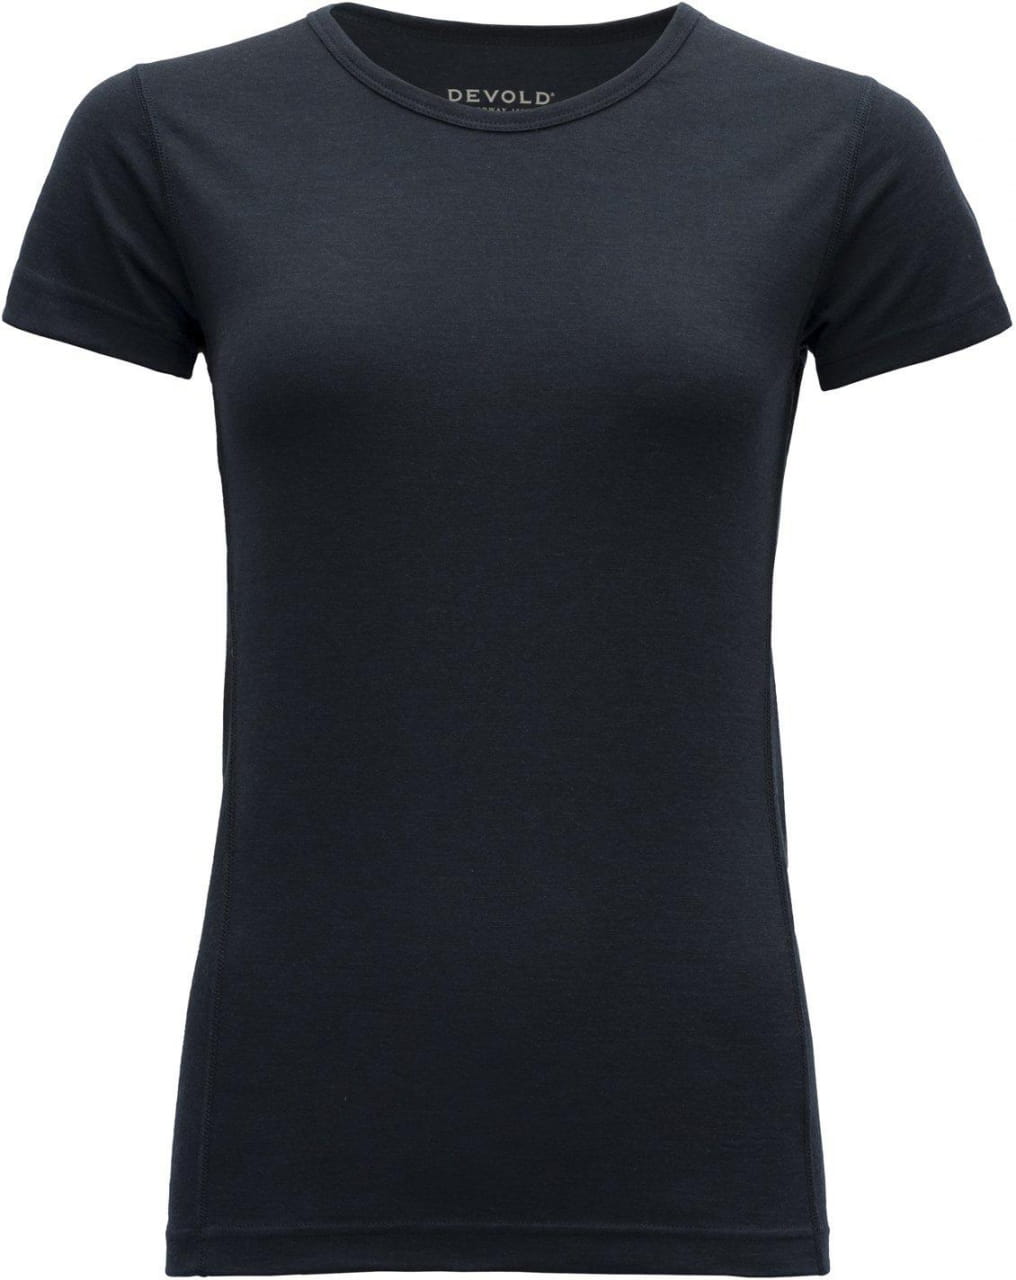 Wanderhemd aus Wolle für Frauen Devold Breeze Woman T-Shirt